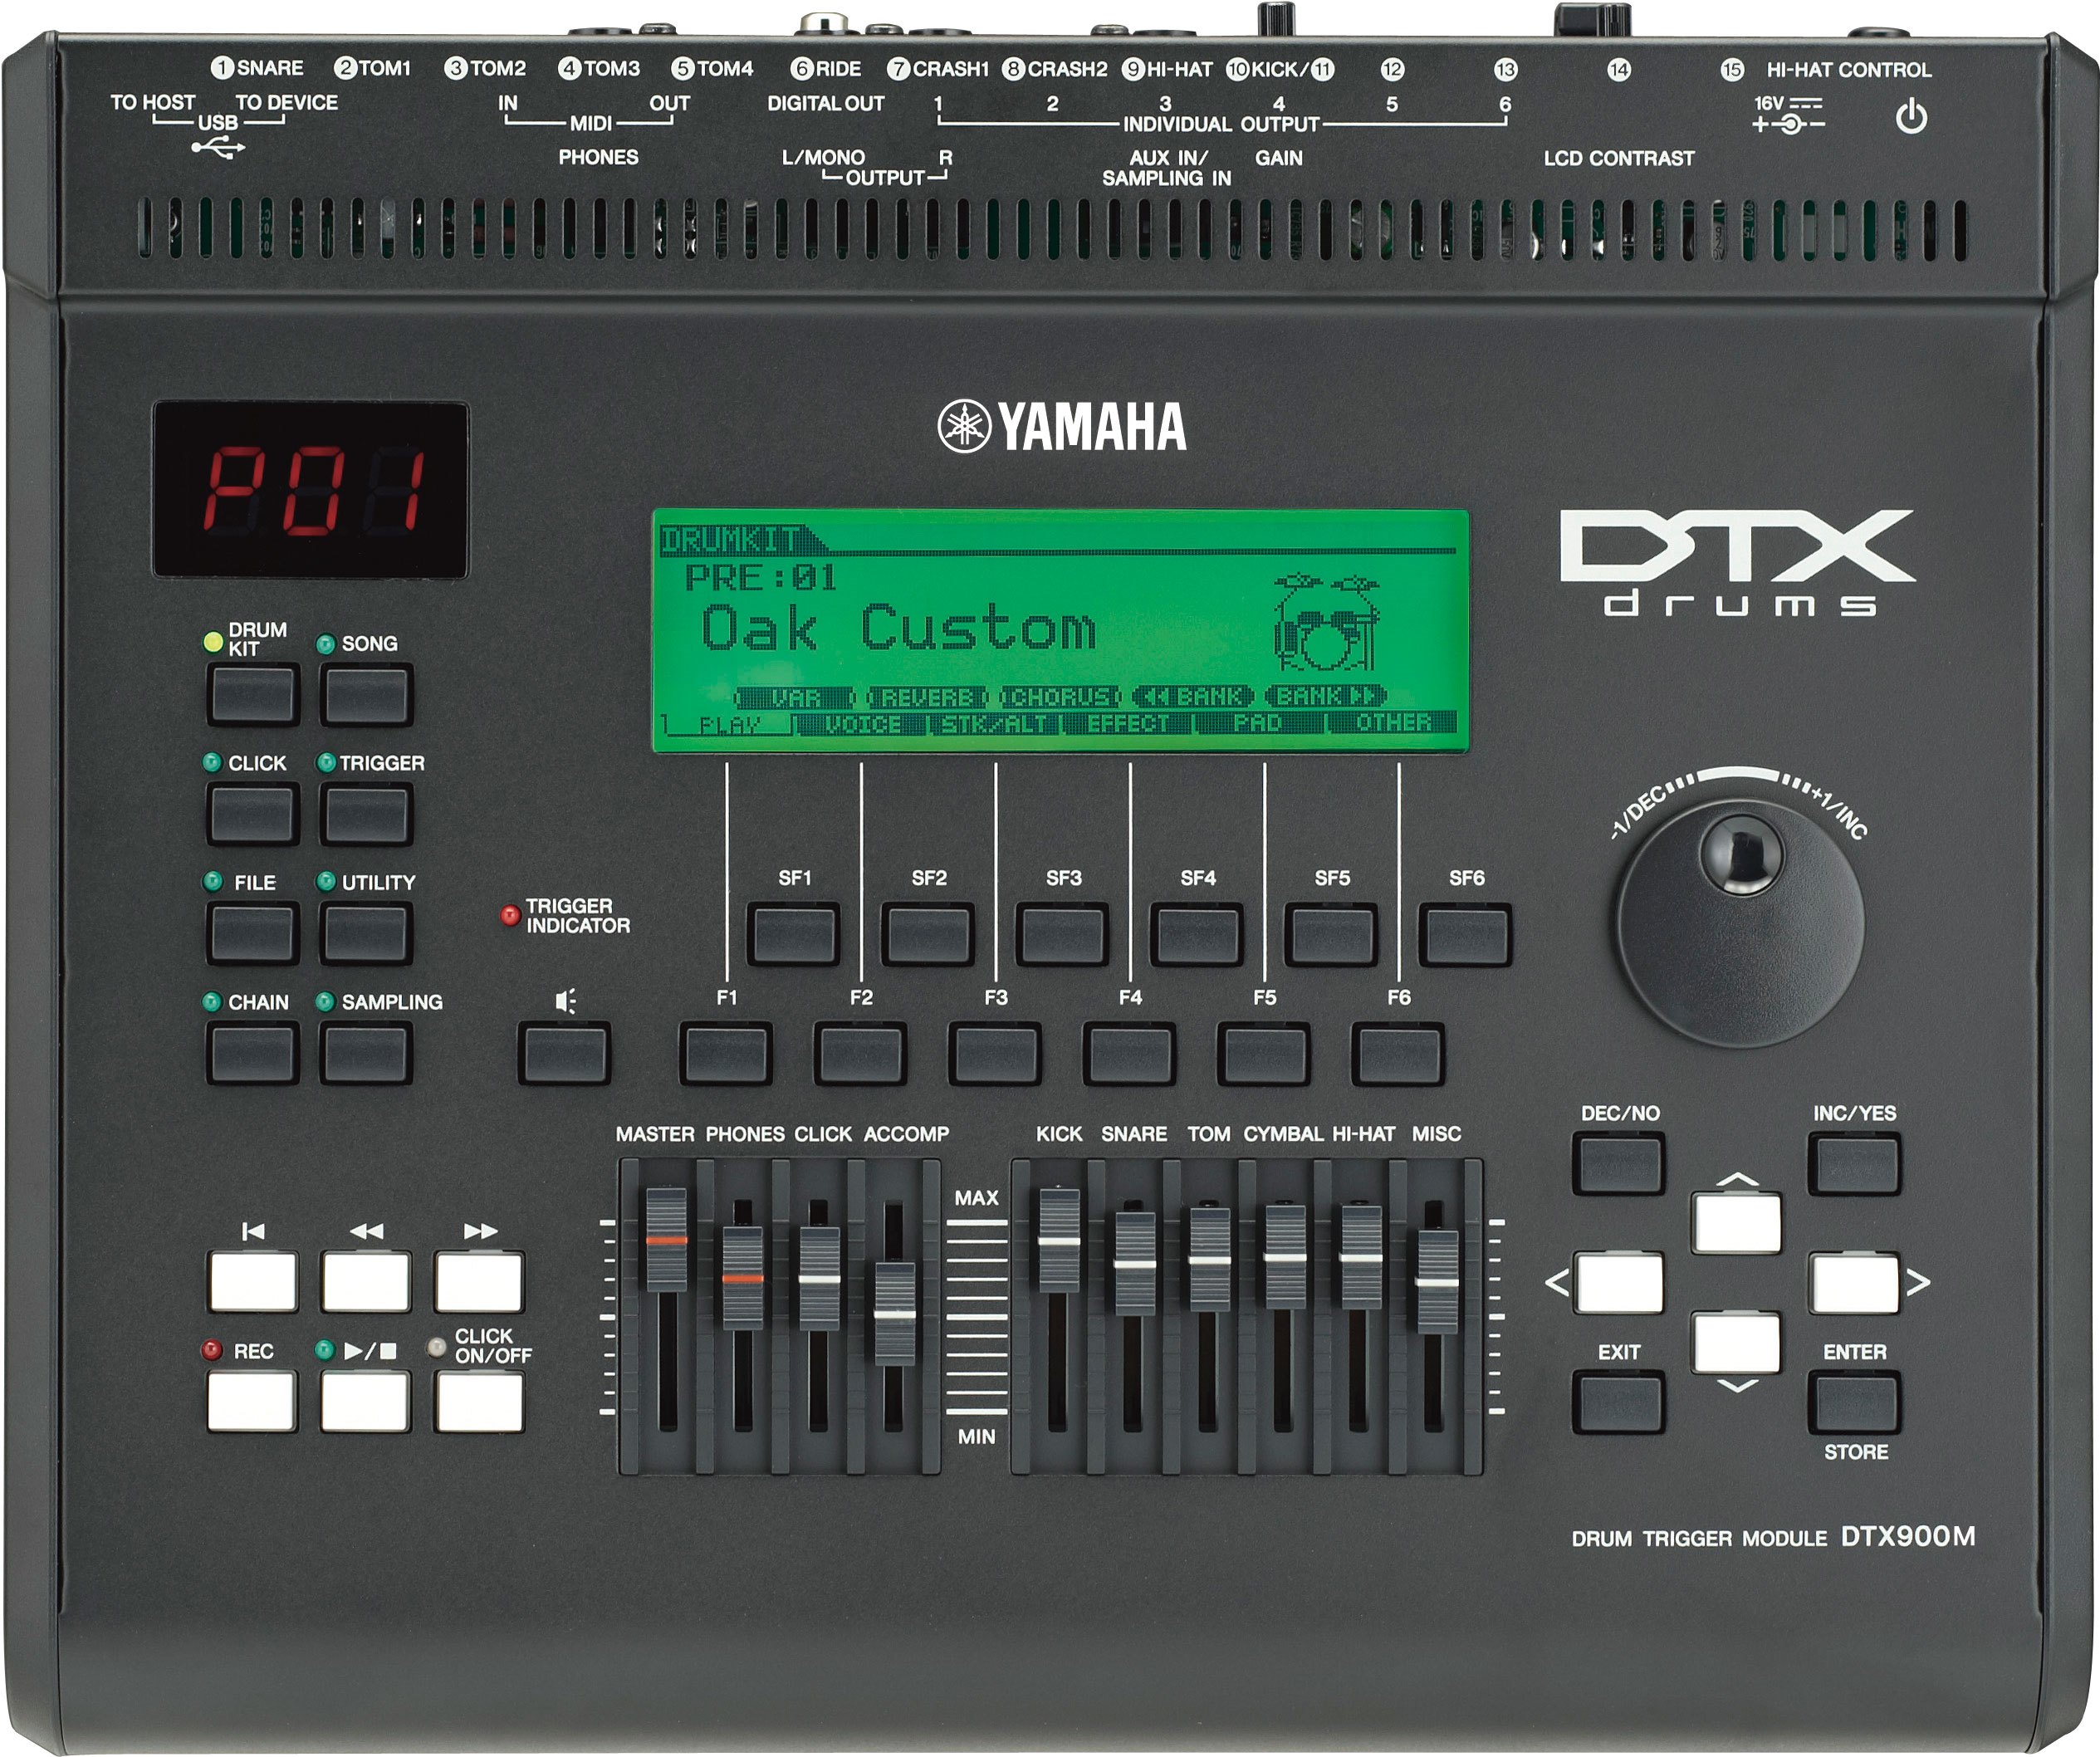 ヤマハ | DTX900M - トリガーモジュール - 概要